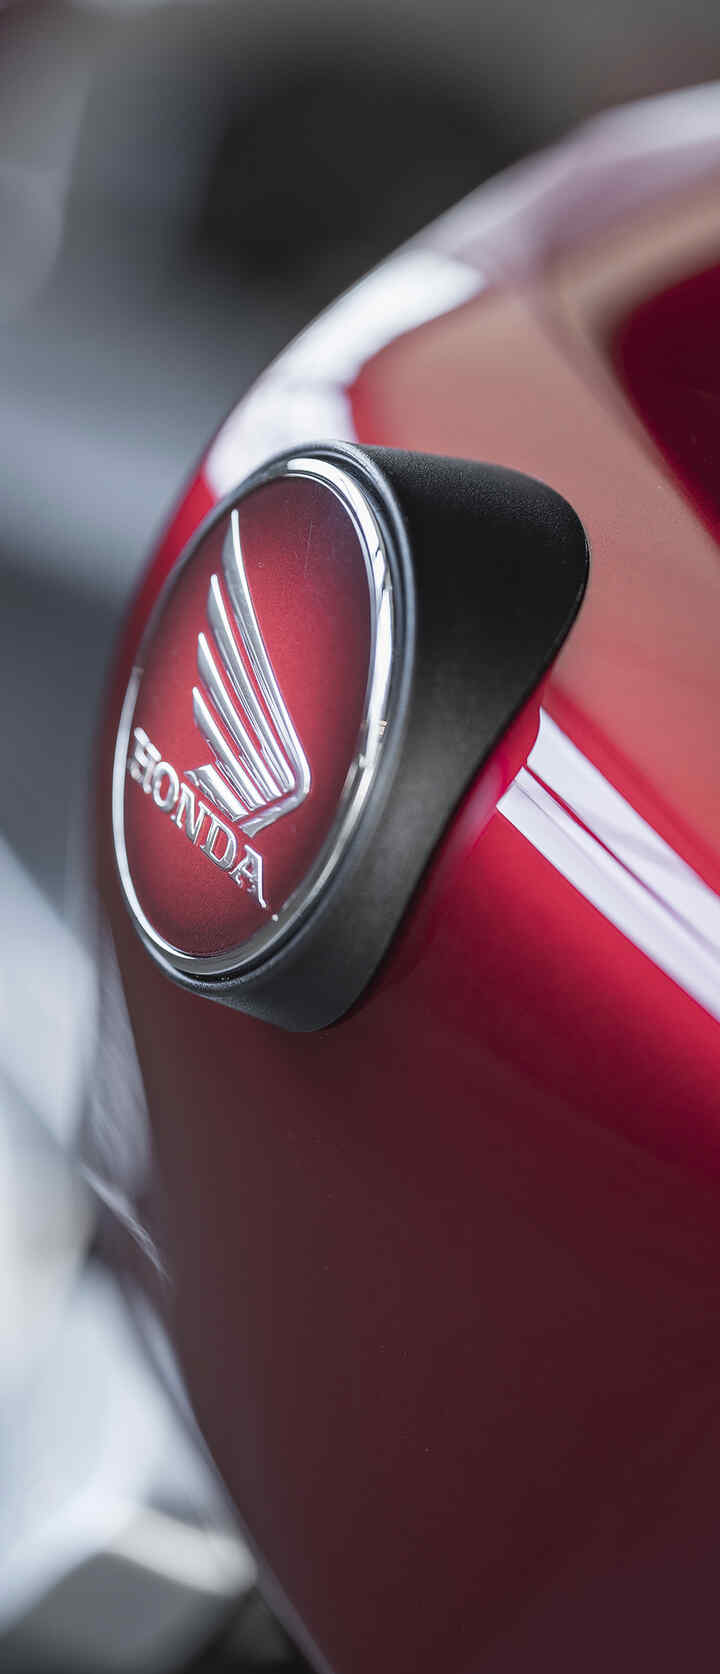 Depósito de gasolina de la motocicleta de Honda con el logotipo de las alas